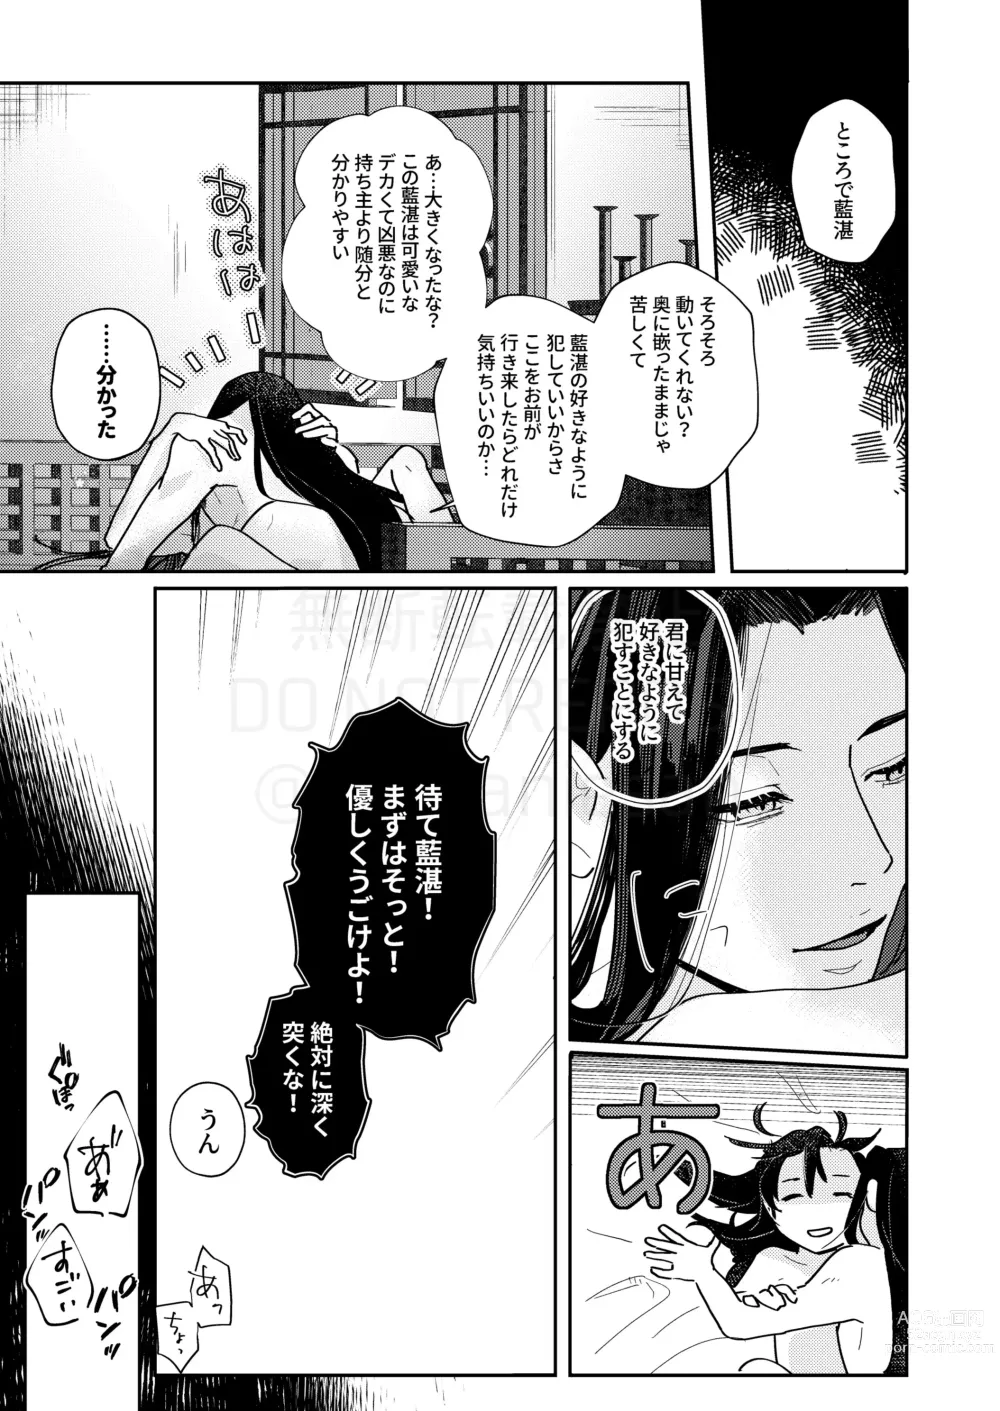 Page 36 of doujinshi Shirafu no Kimi ga!?